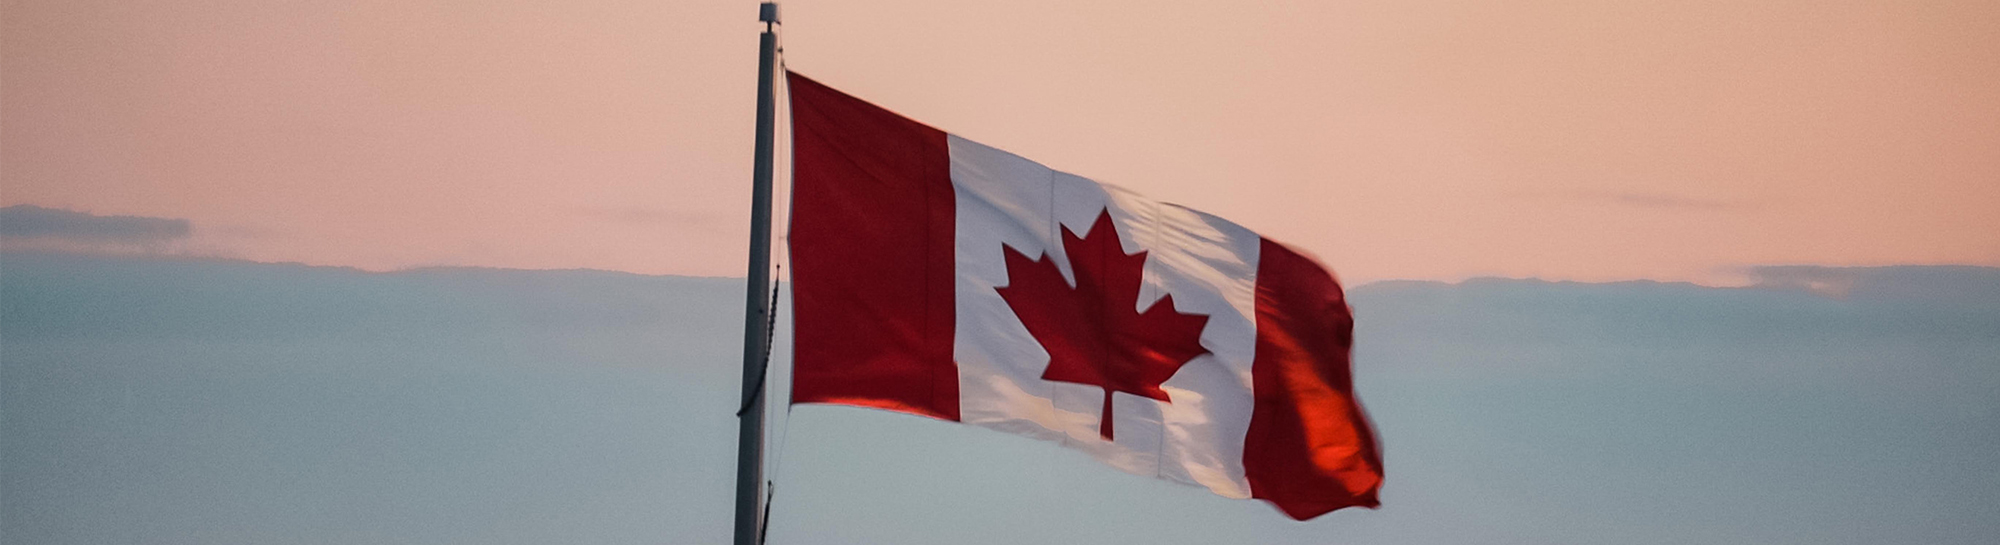 Paket nach Kanada versenden: Werde die Nr. 1 beim Versand in das zweitgrößte Land der Welt!